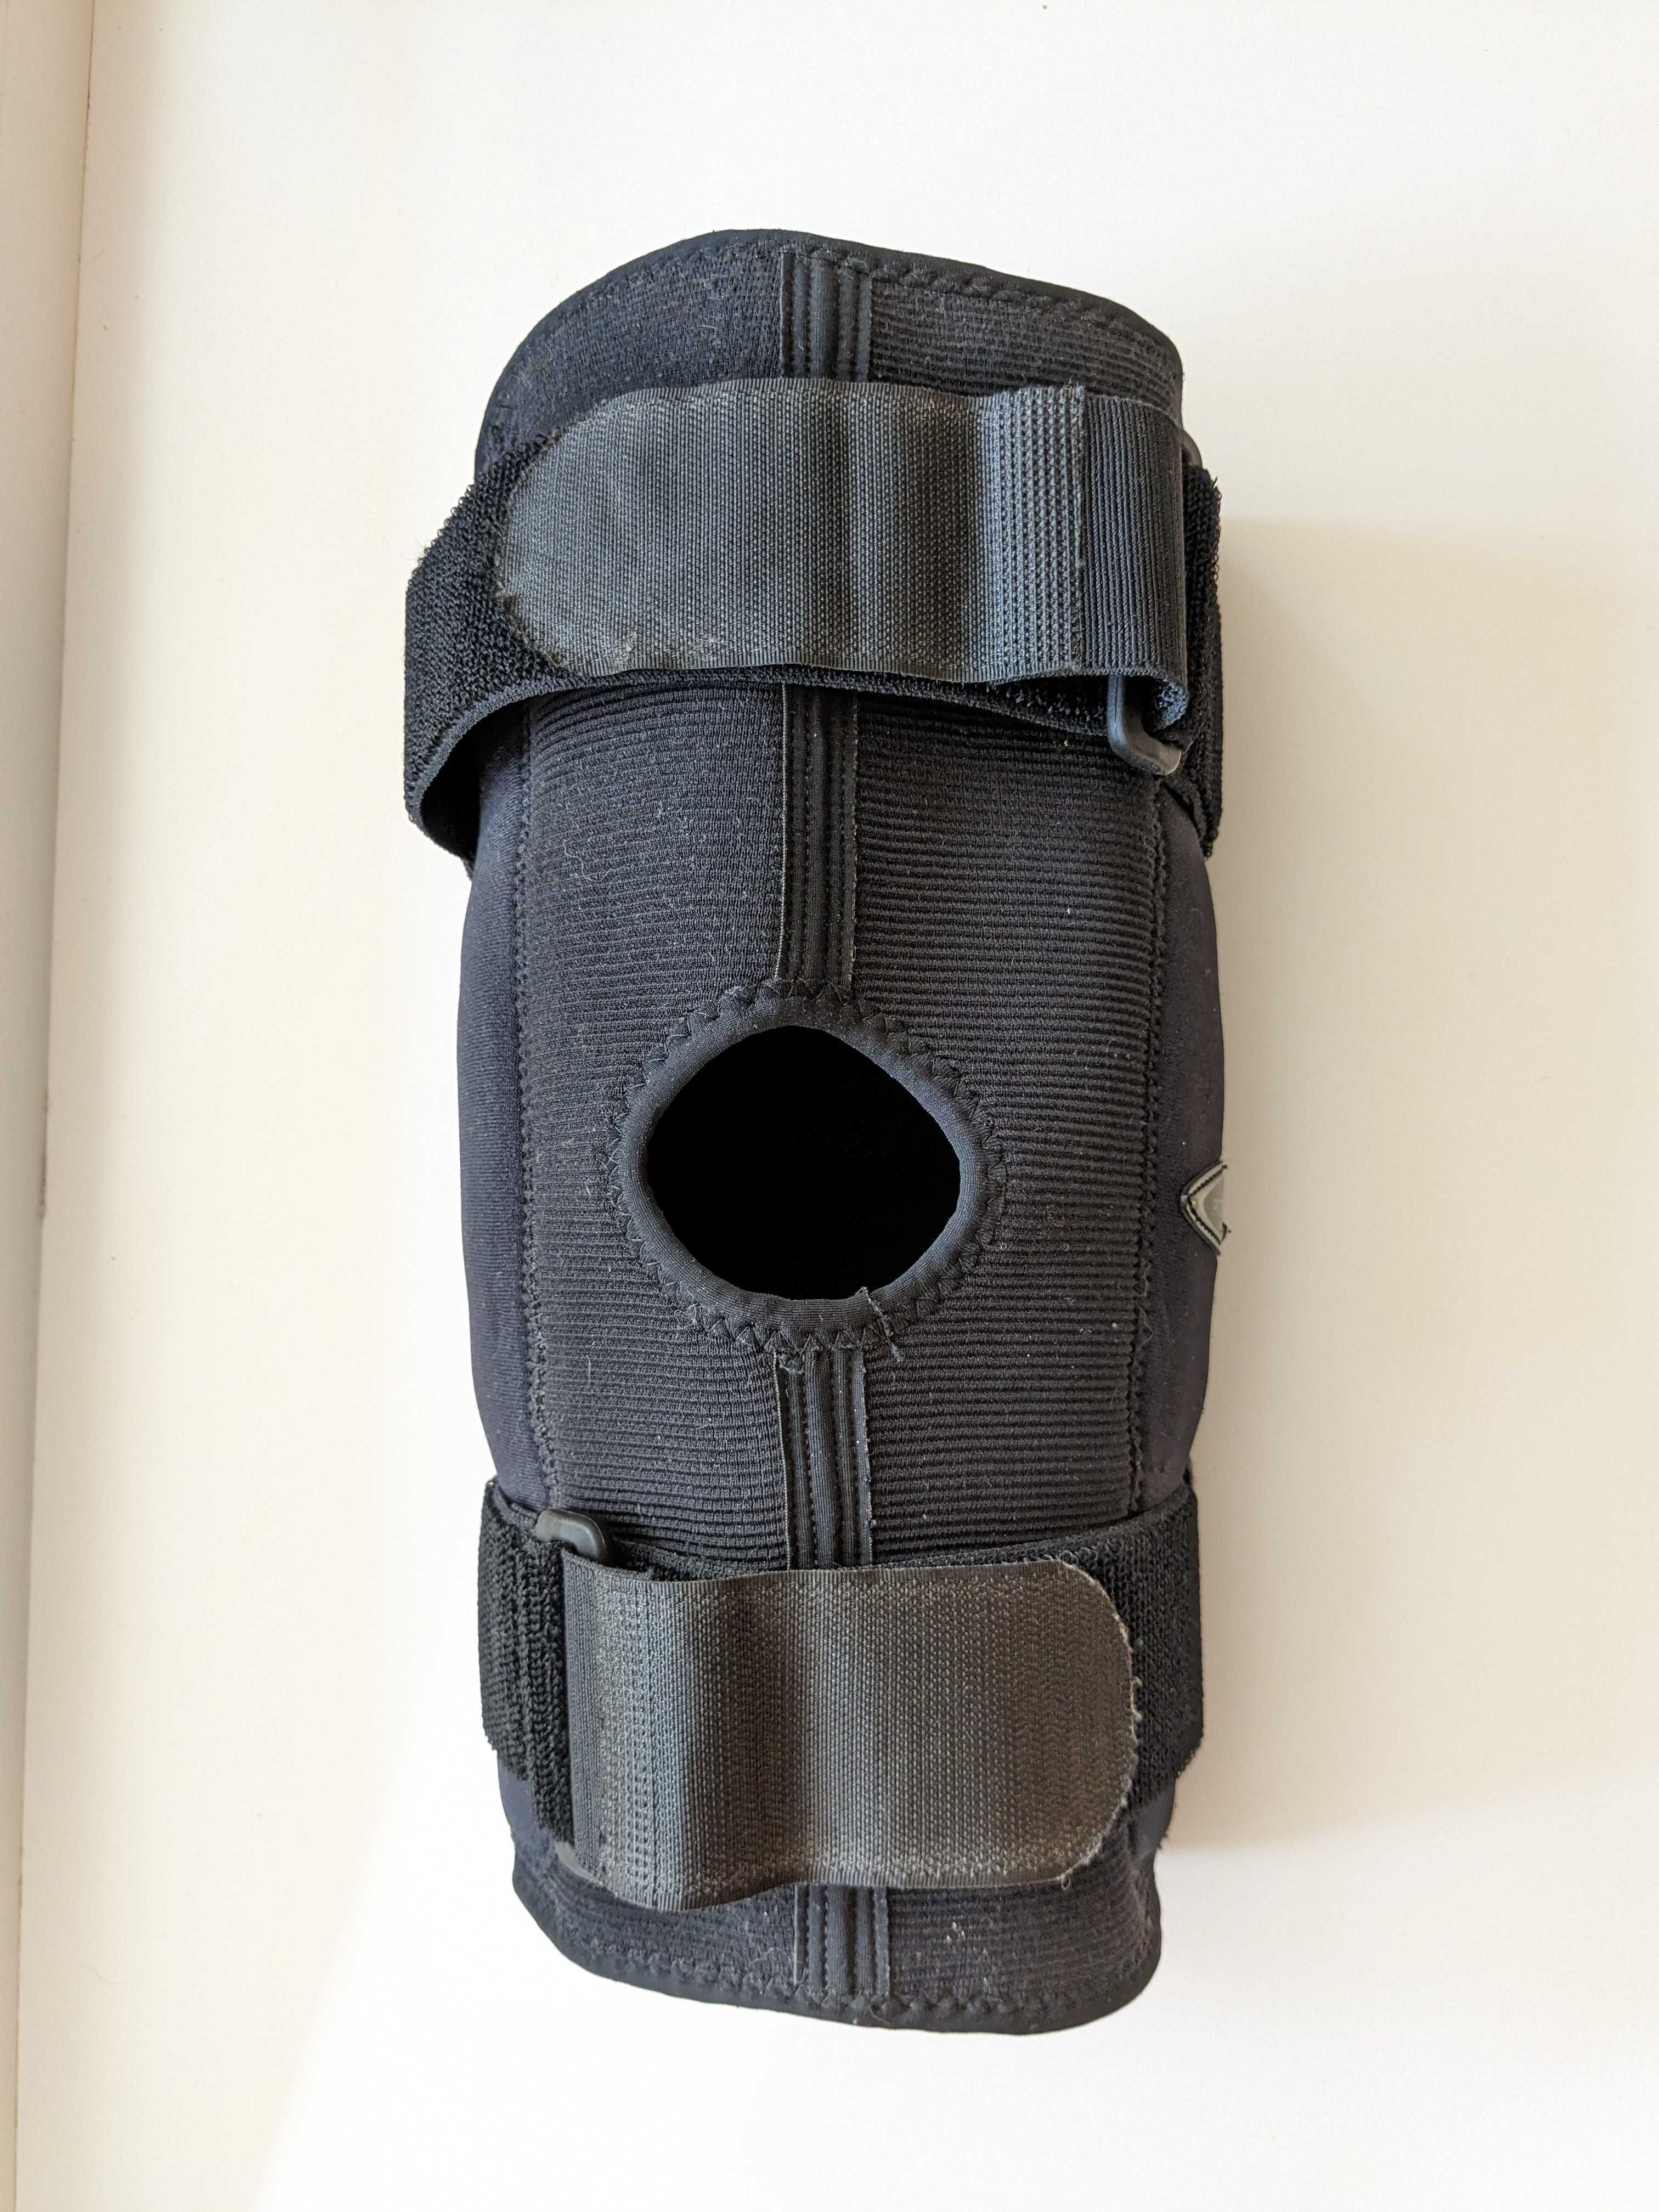 Укороченный коленный ортез protect.ST PRO medi бандаж шарнирный